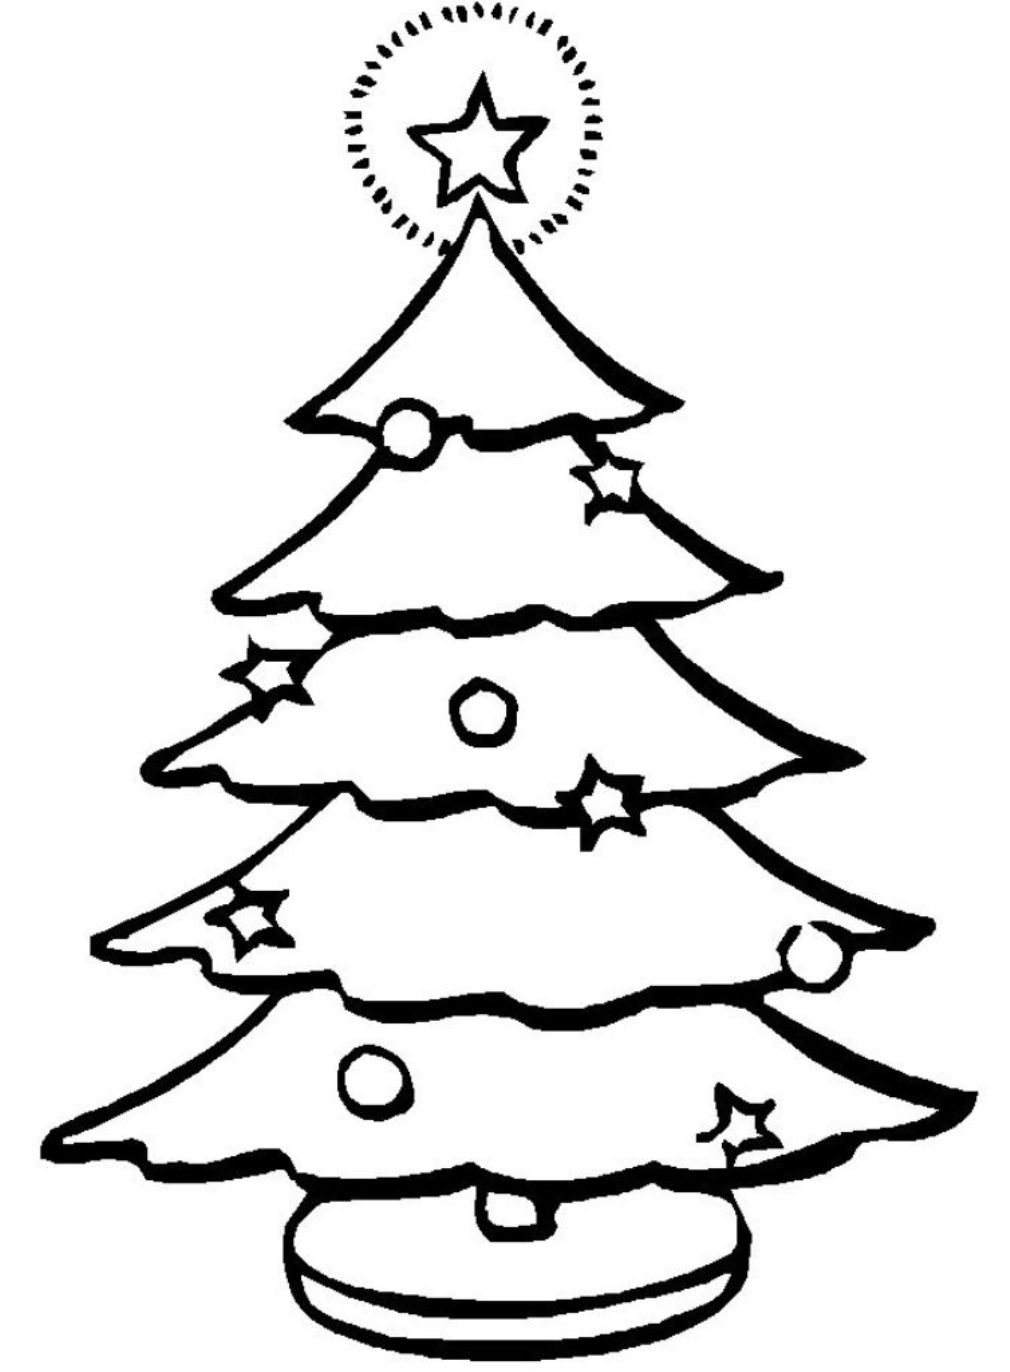 Printable Christmas Tree For Kids Coloring Page